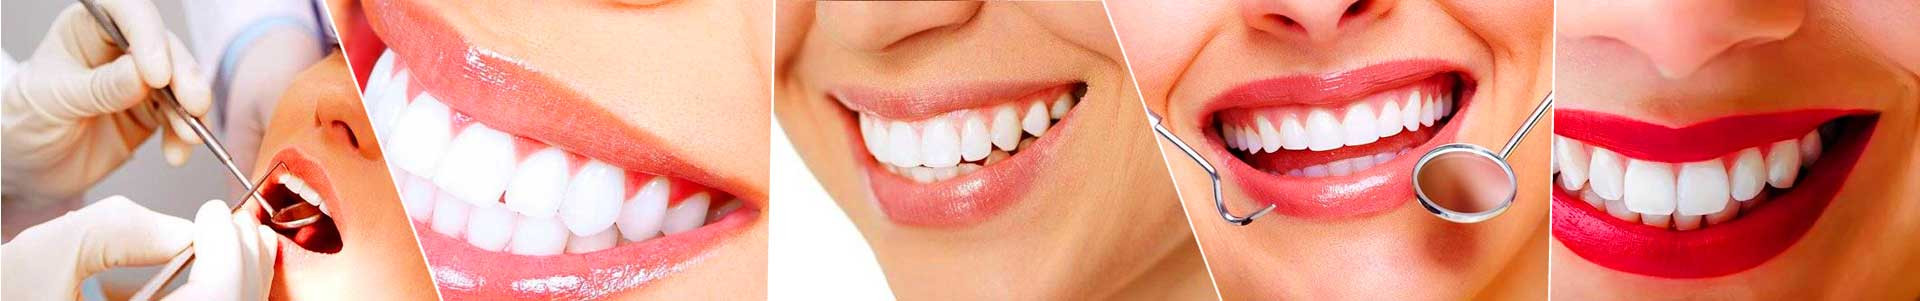 بهترین خرید کلینیک دندانپزشکی ارکید کرج با بیشترین درصد تخفیف در قیمت - 80%